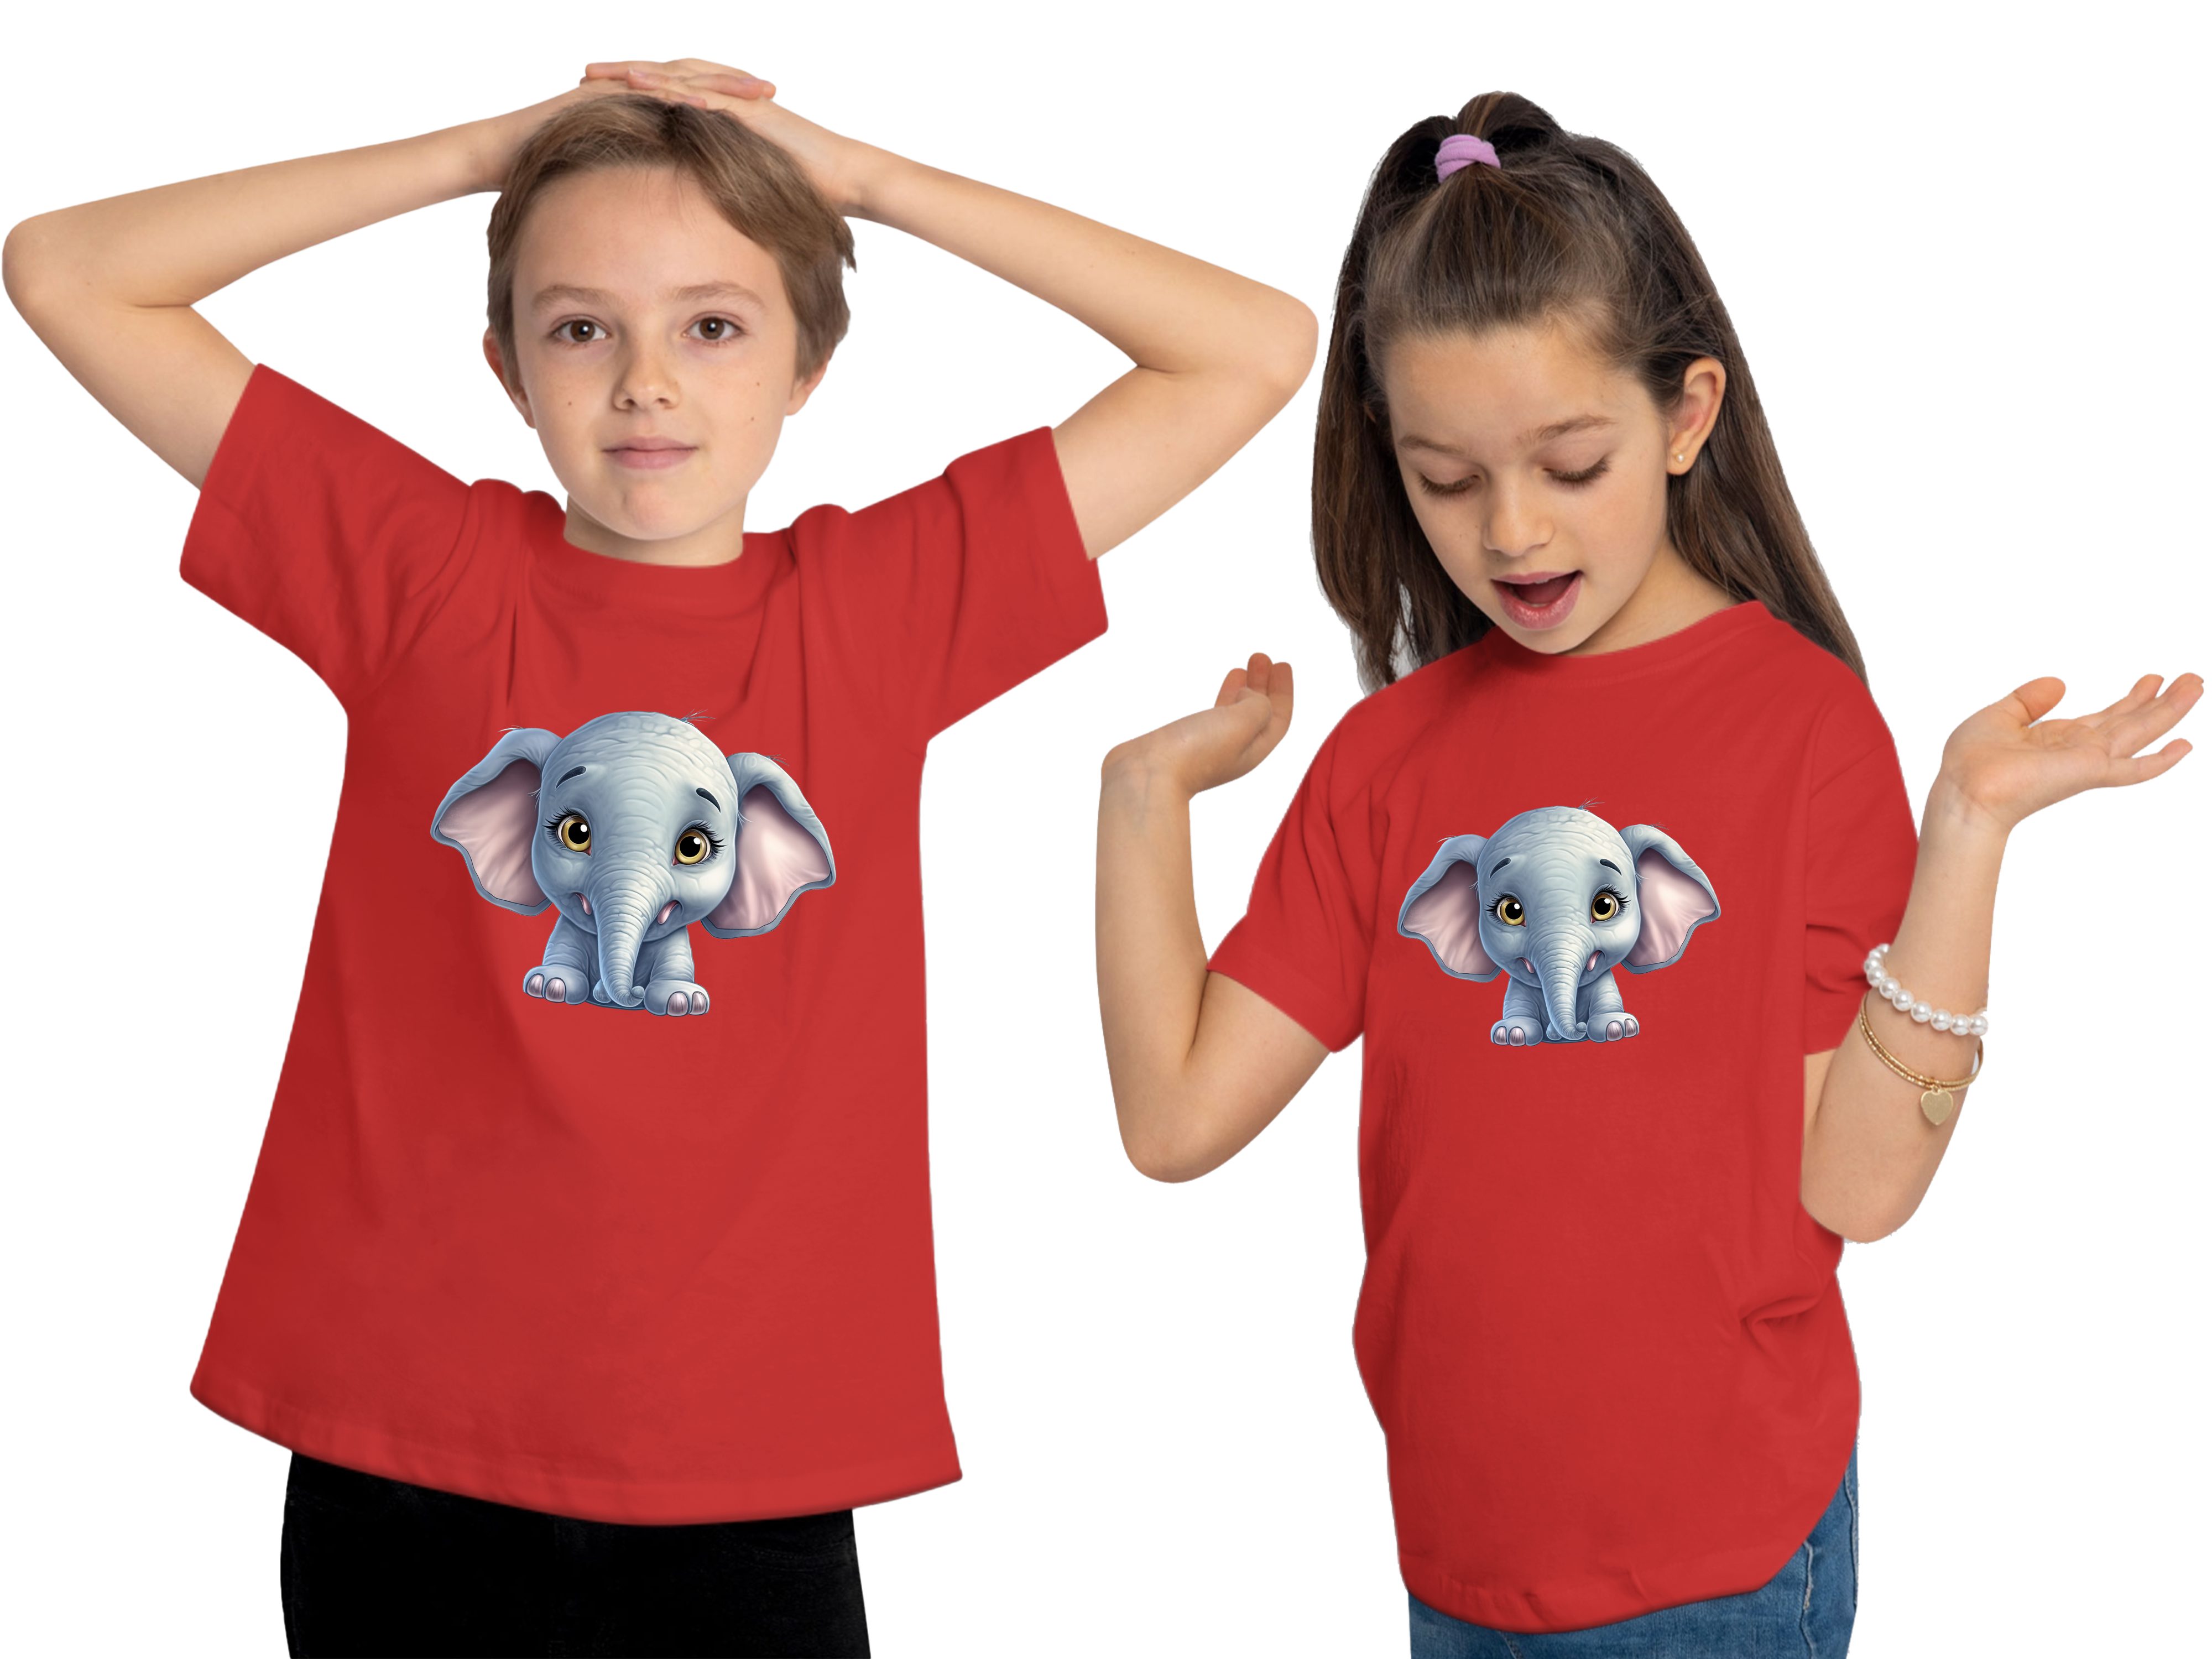 MyDesign24 T-Shirt Kinder Wildtier bedruckt mit Elefant Print Shirt i272 Baumwollshirt - Aufdruck, rot Baby